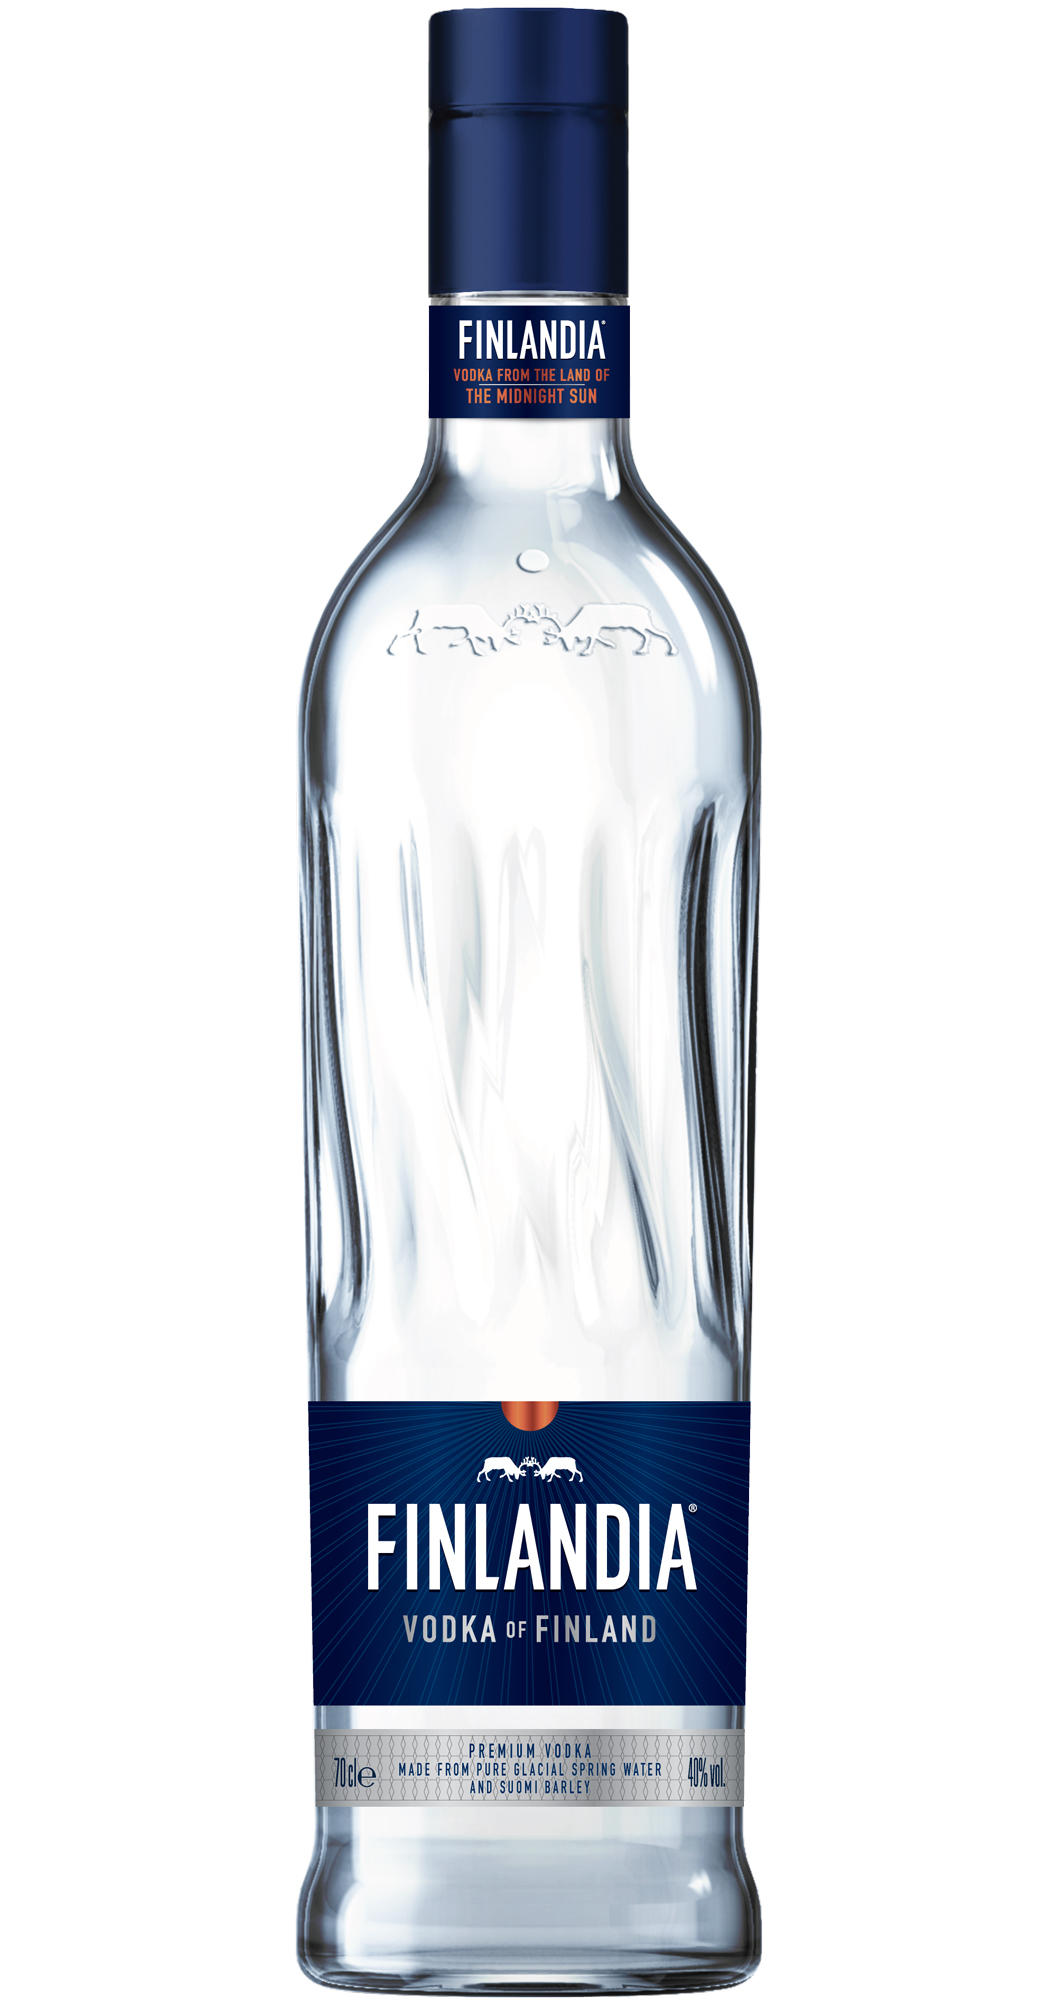 Finlandia Classic